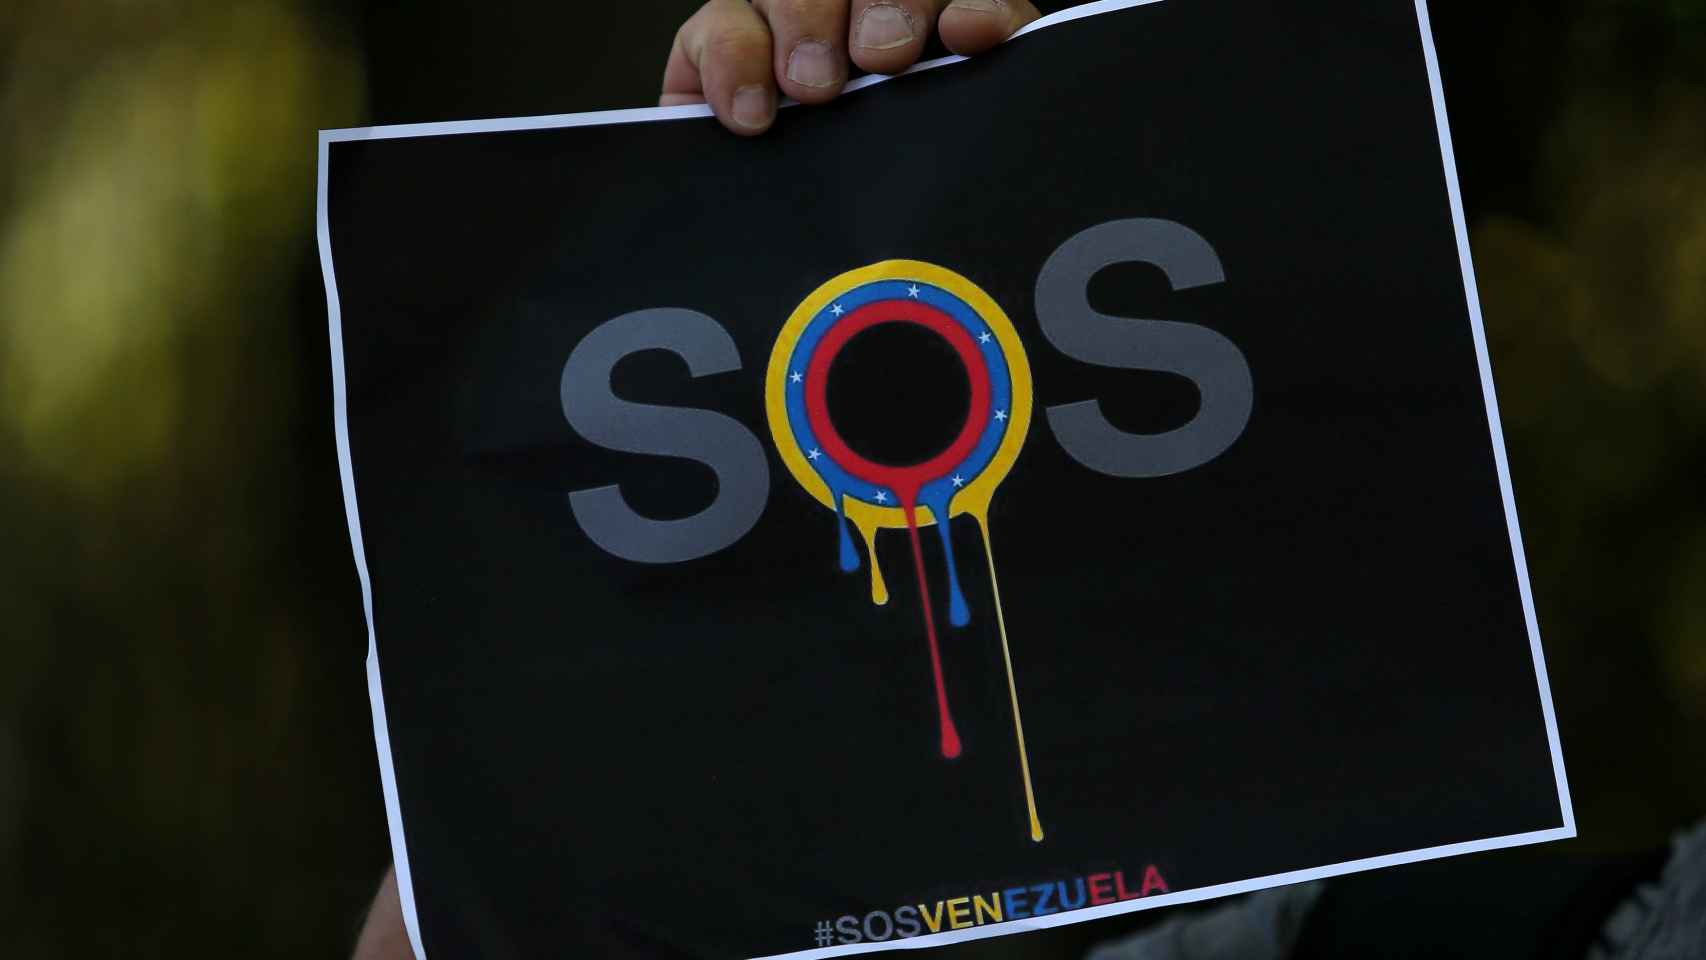 Mensaje de SOS escrito con los colores de la bandera venezolana.